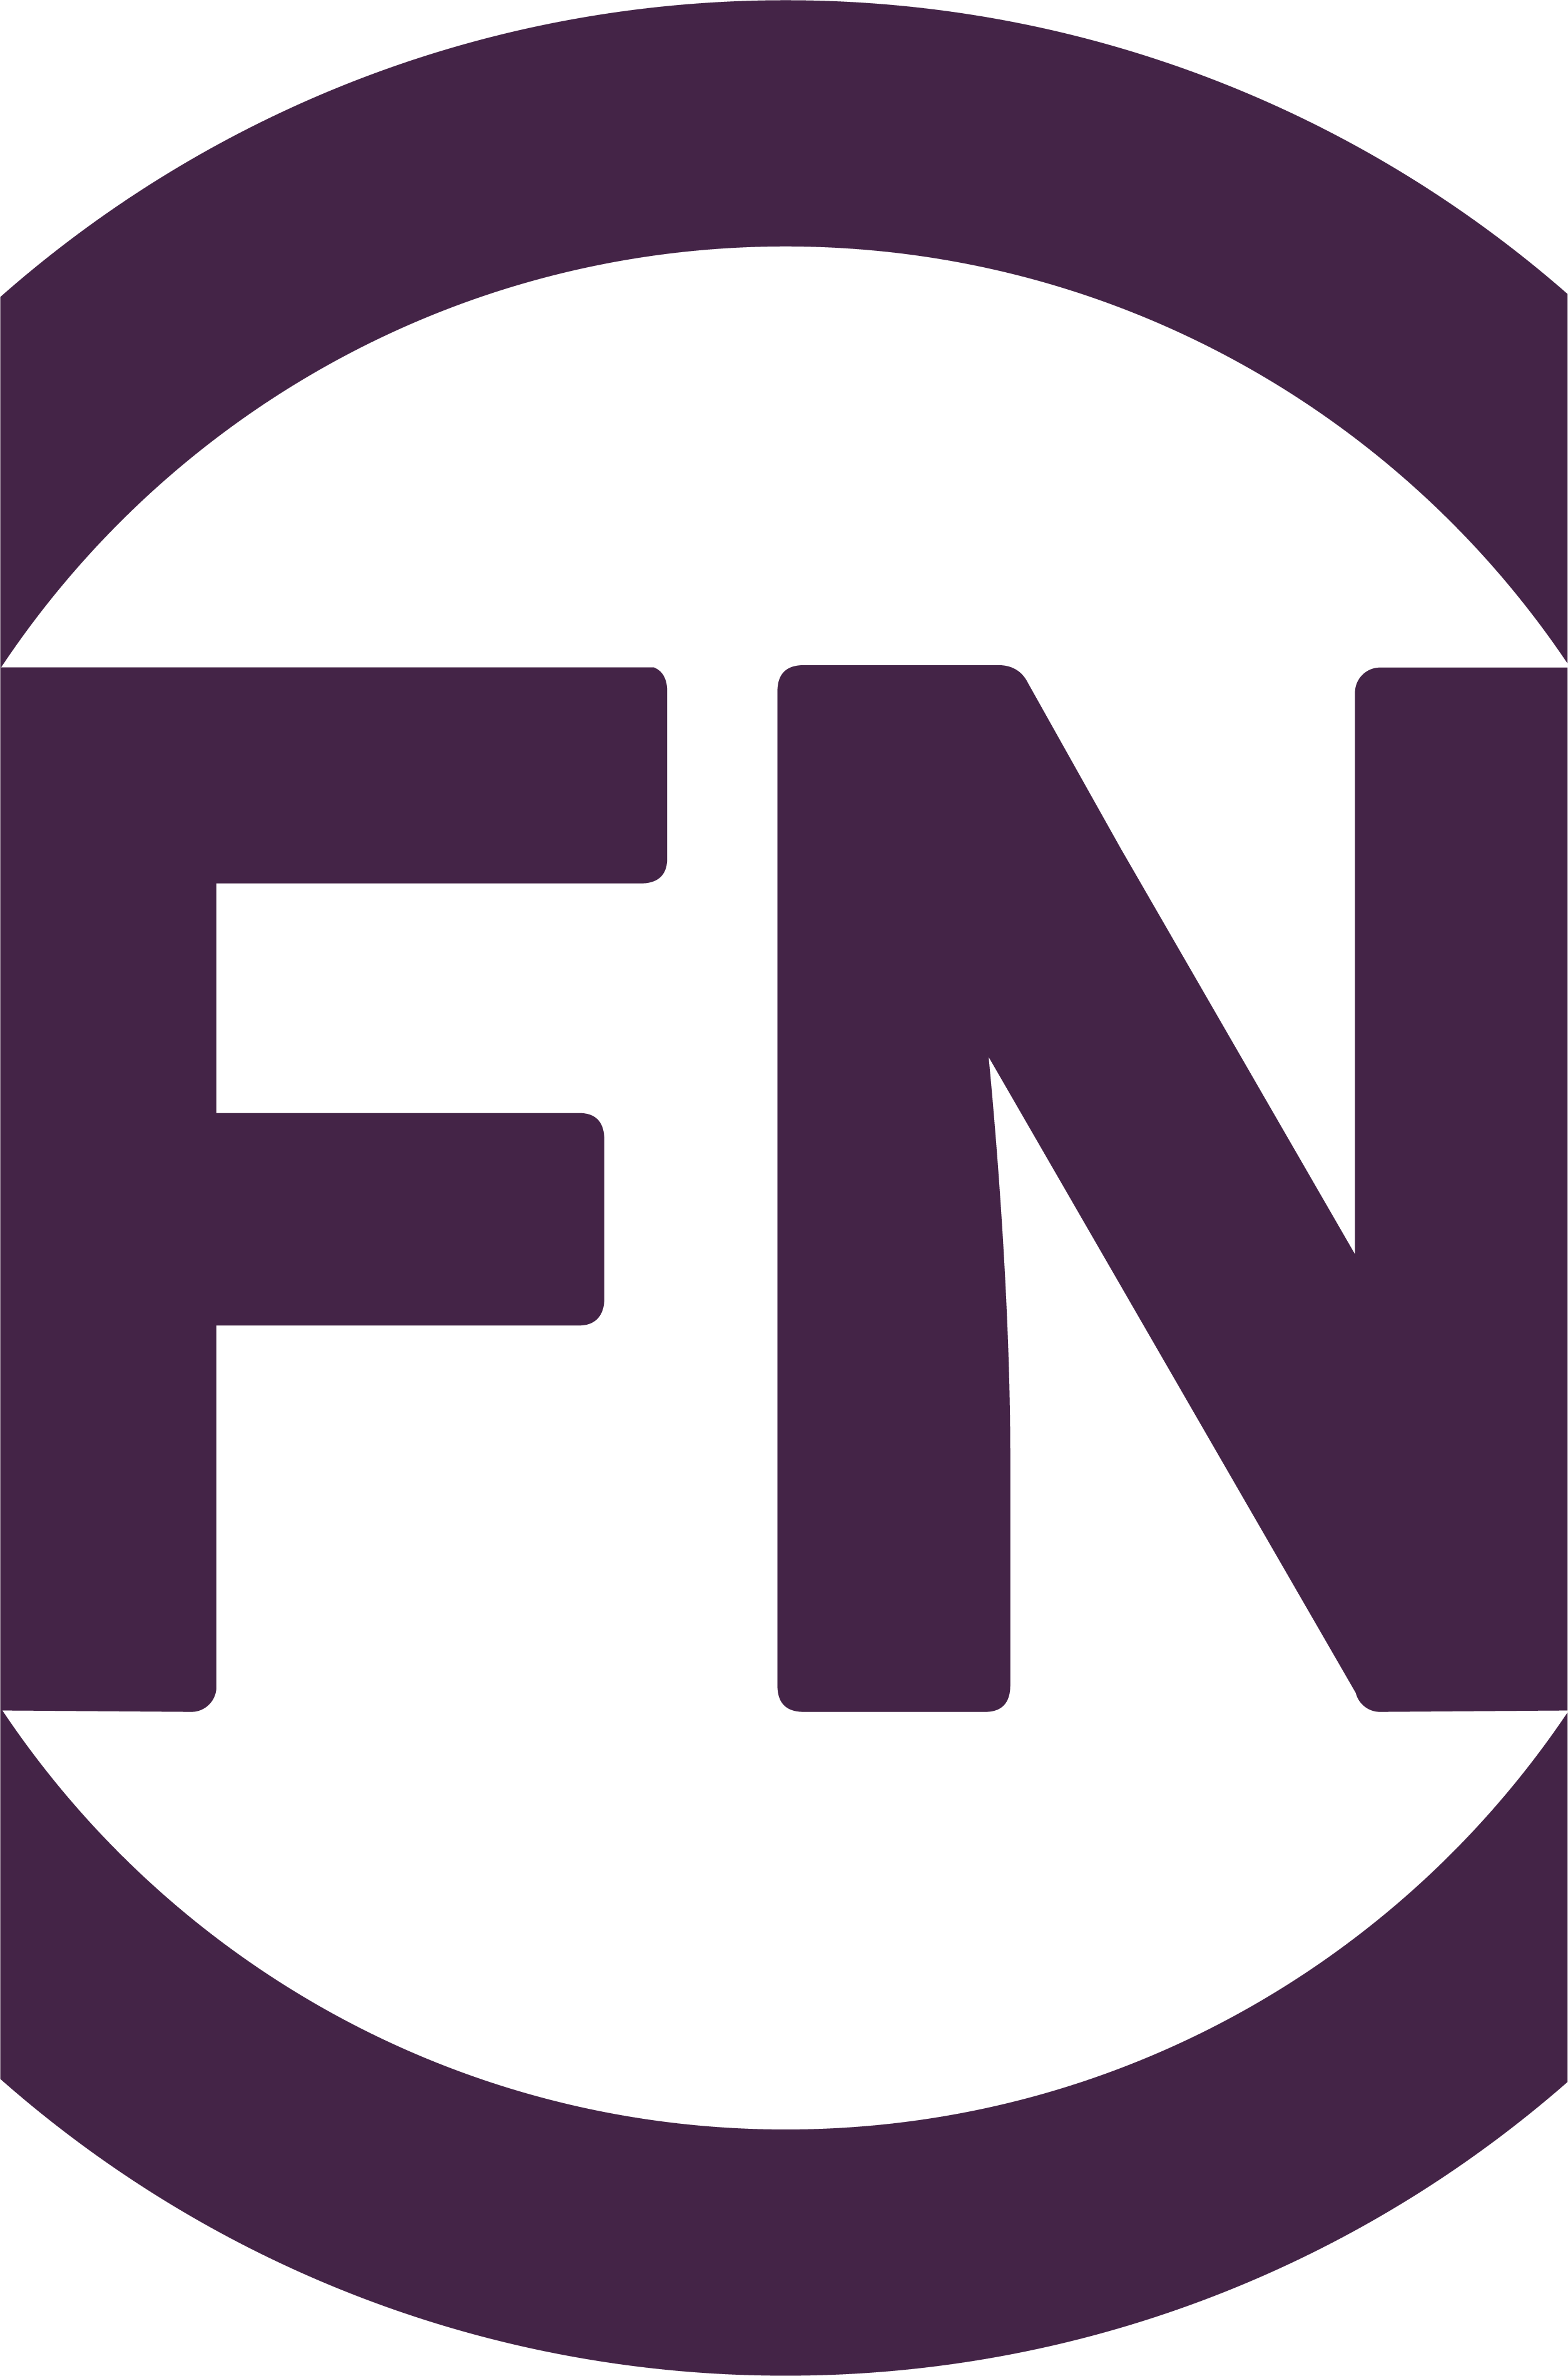 FiscalNote logo